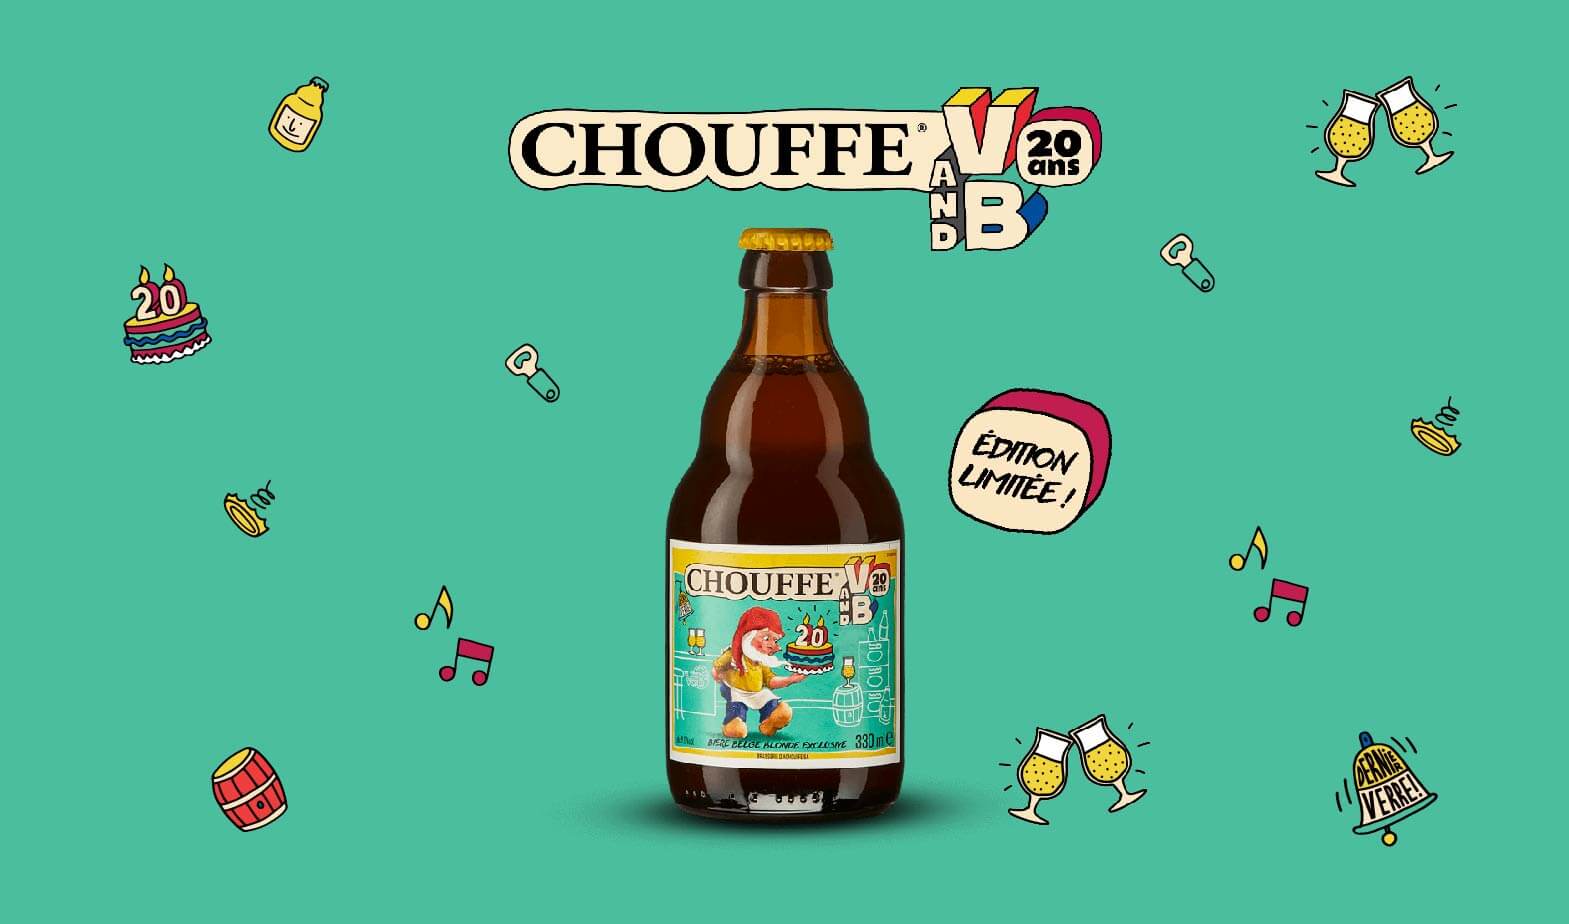 Bière blonde Chouffe V and B